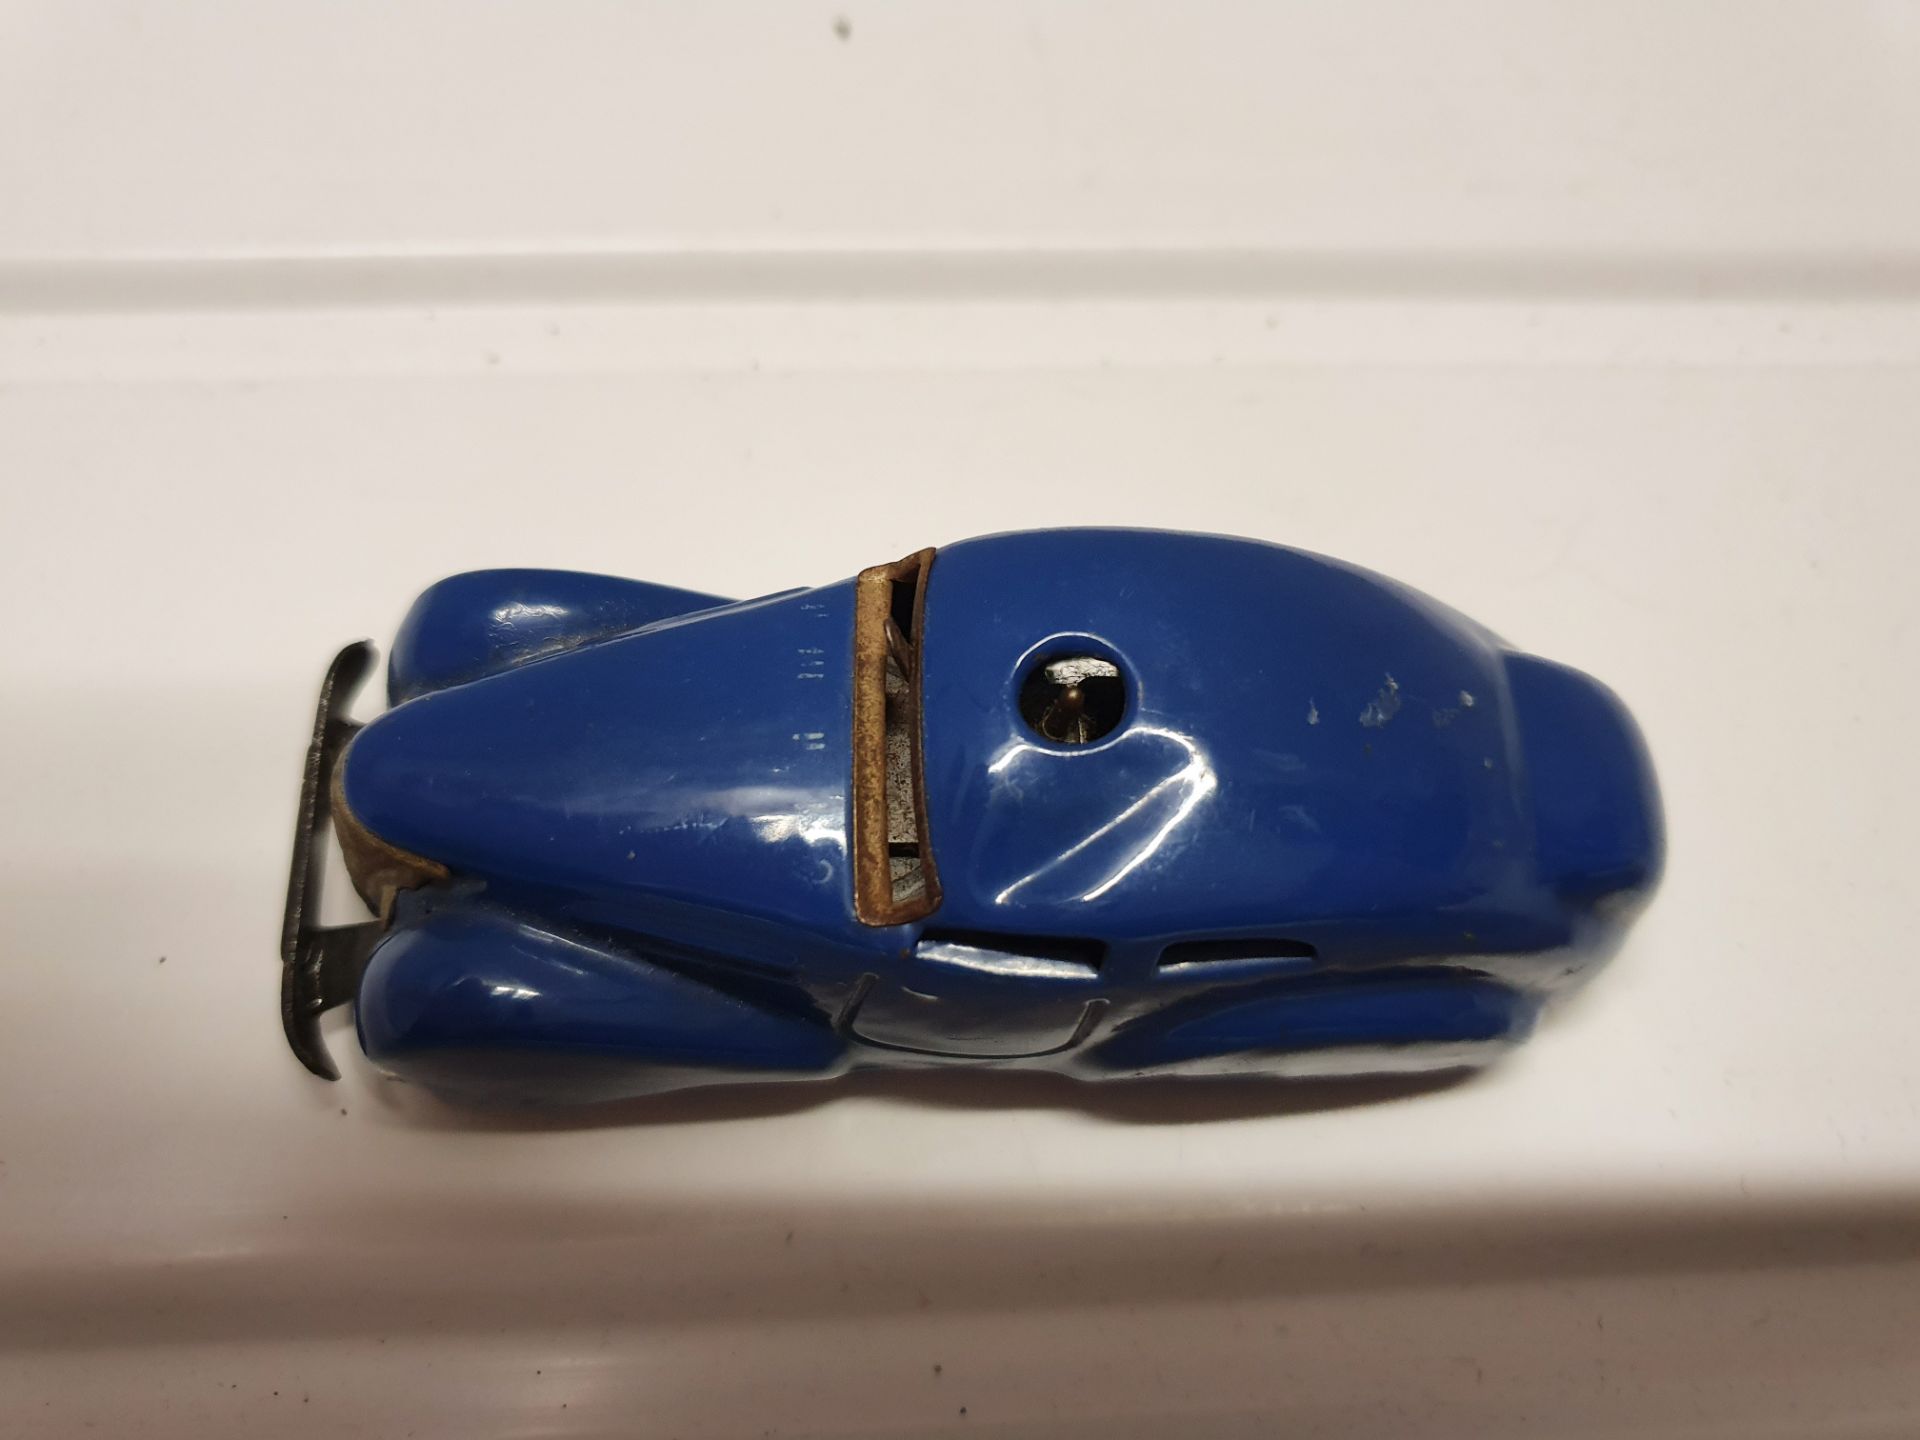 Vintage Schuco Toy Car - Image 4 of 5